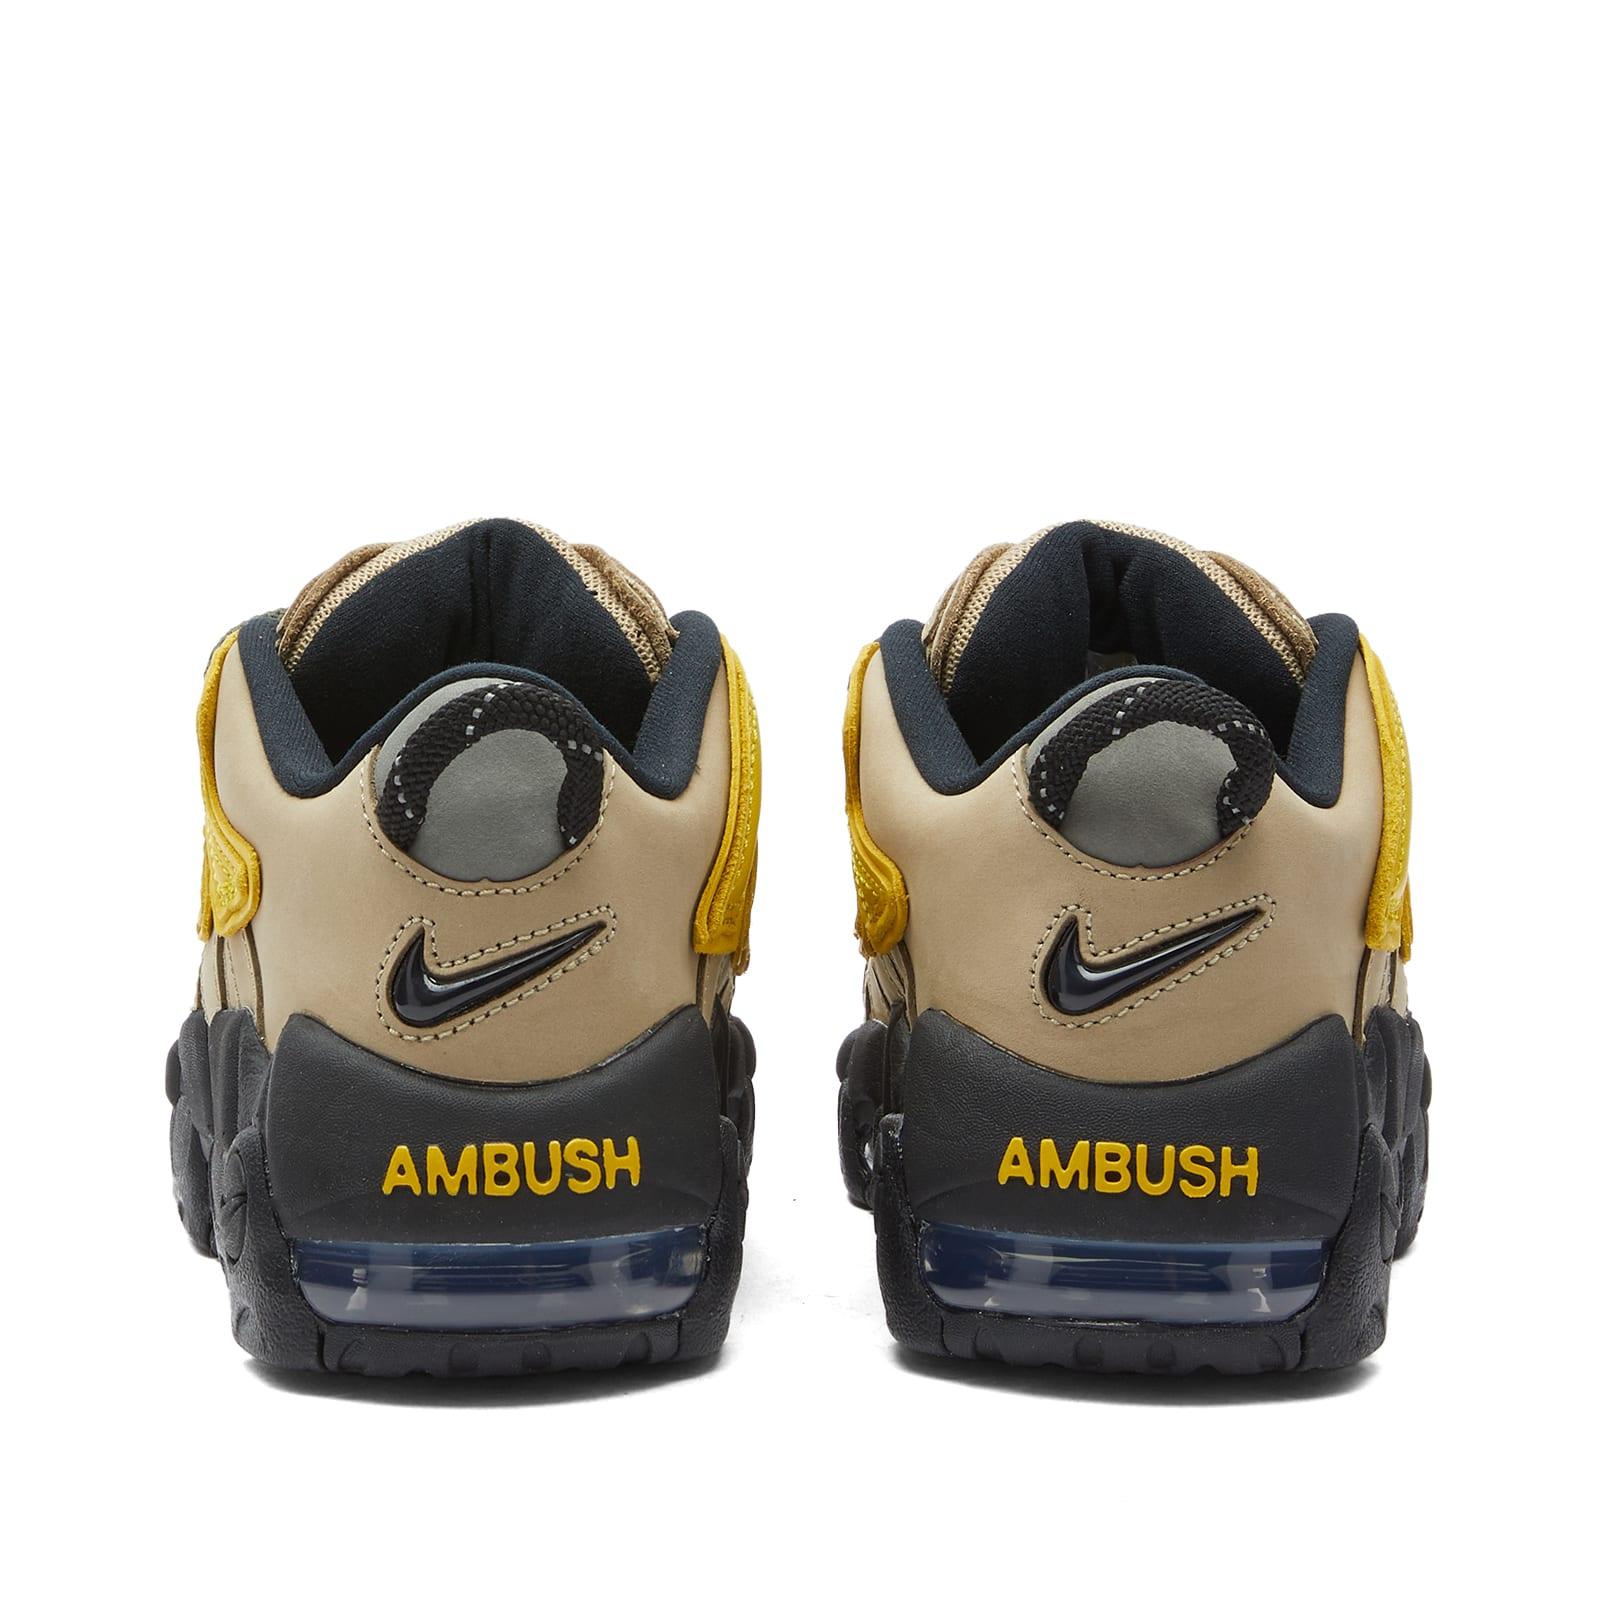 AMBUSH Nike Air More Uptempo Multi-Color Release Info